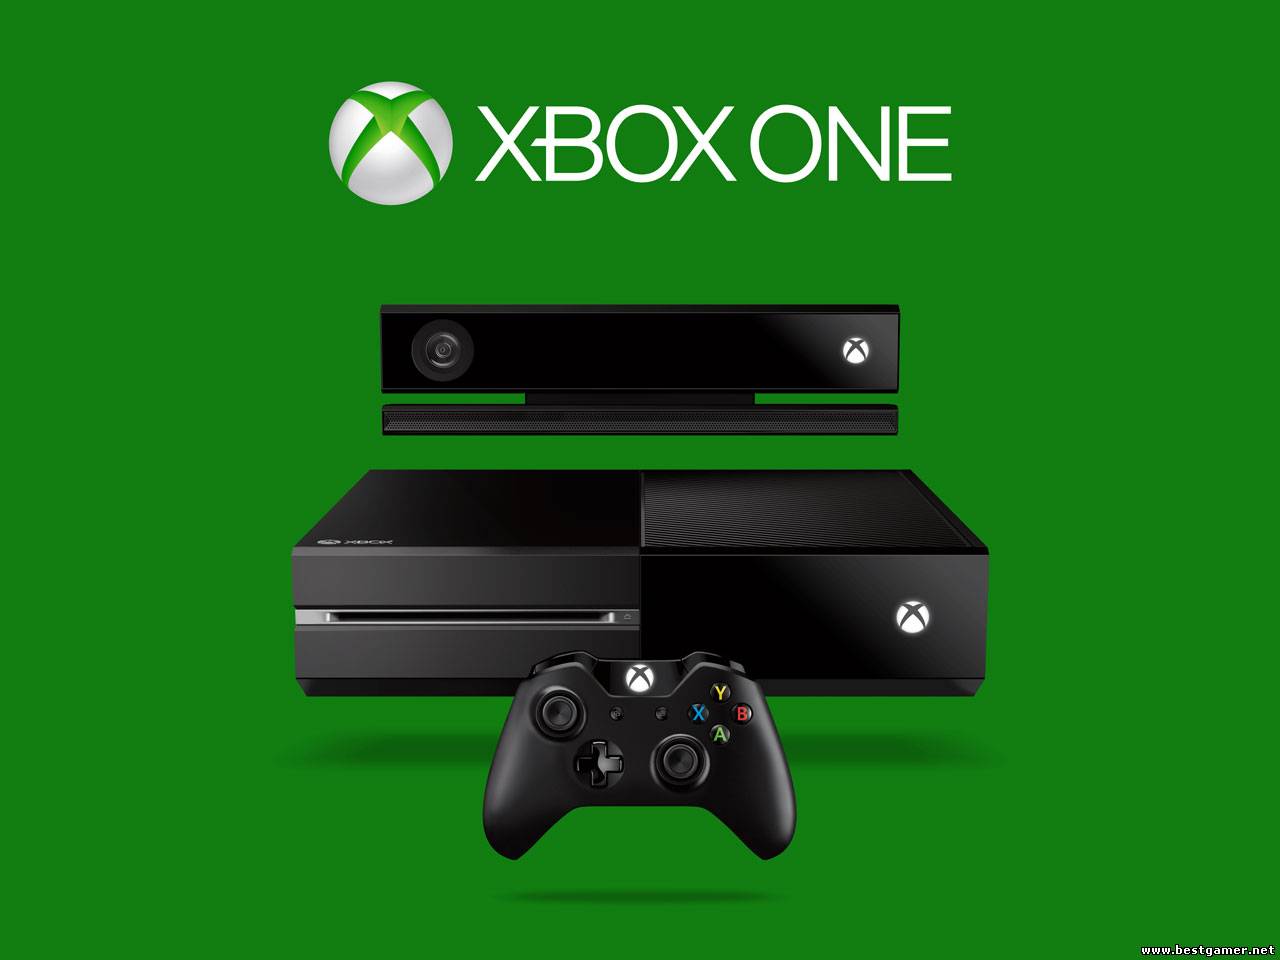 Hовые впечатления от Xbox One